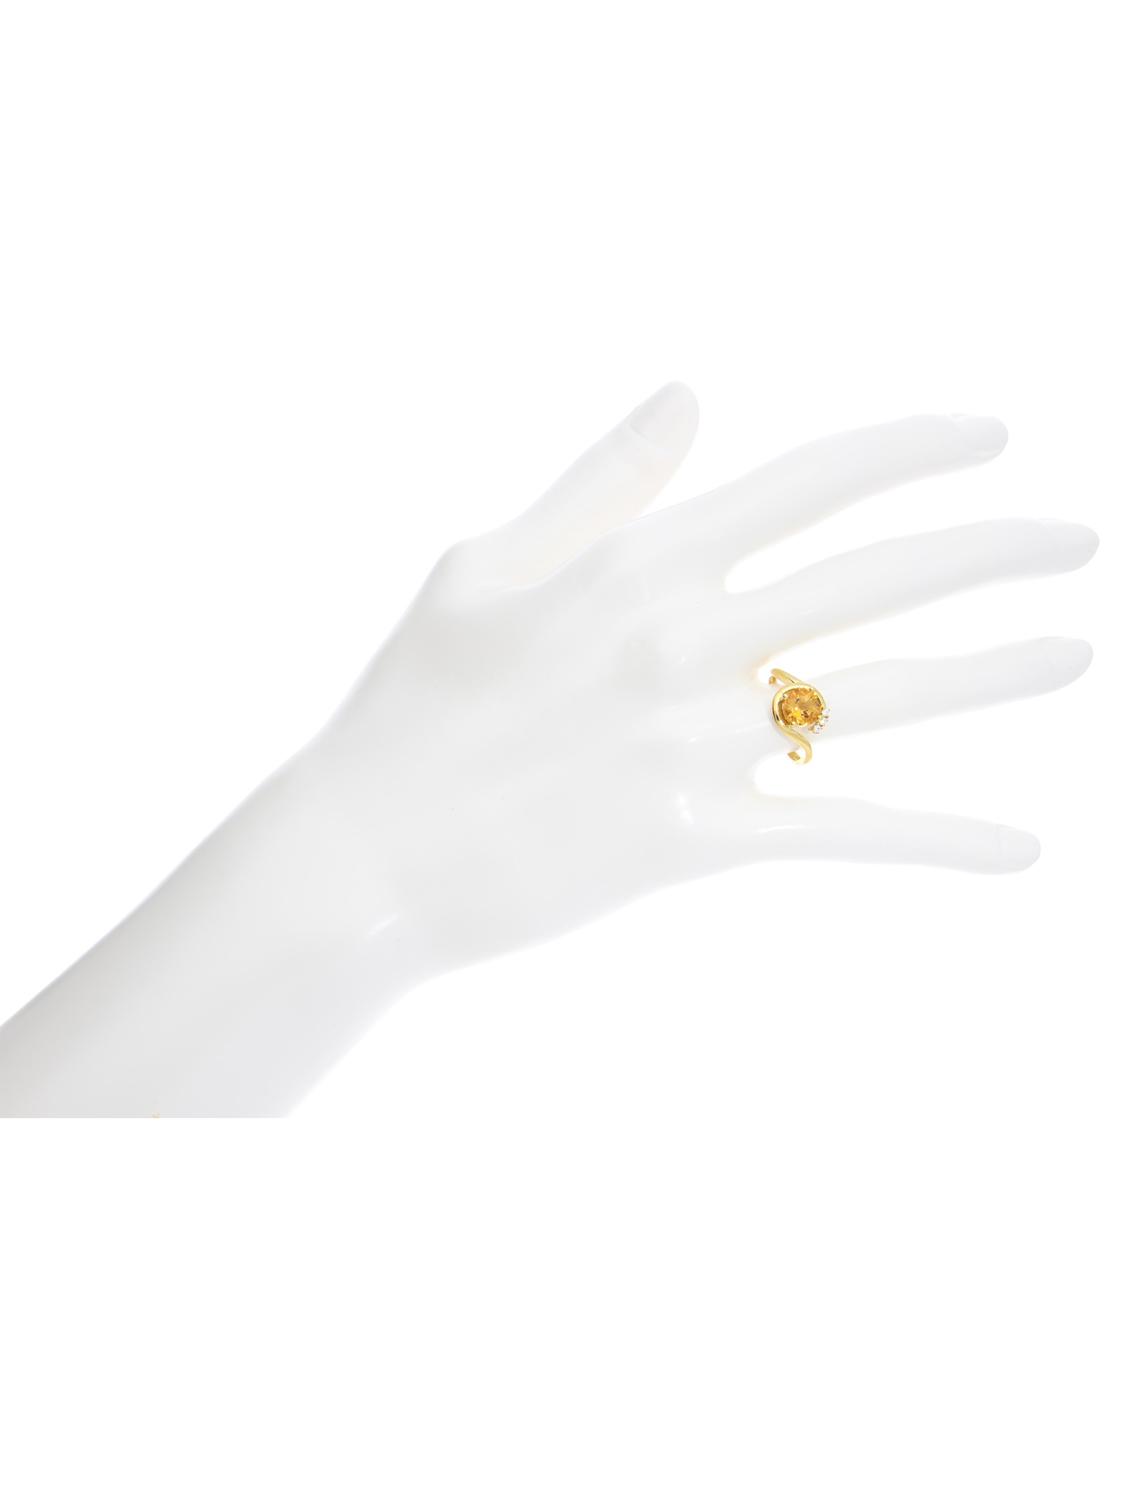 Damenring aus echtem Gelbgold mit weißen Zirkonia & Citrin Edelstein - Sala | Büstenansicht